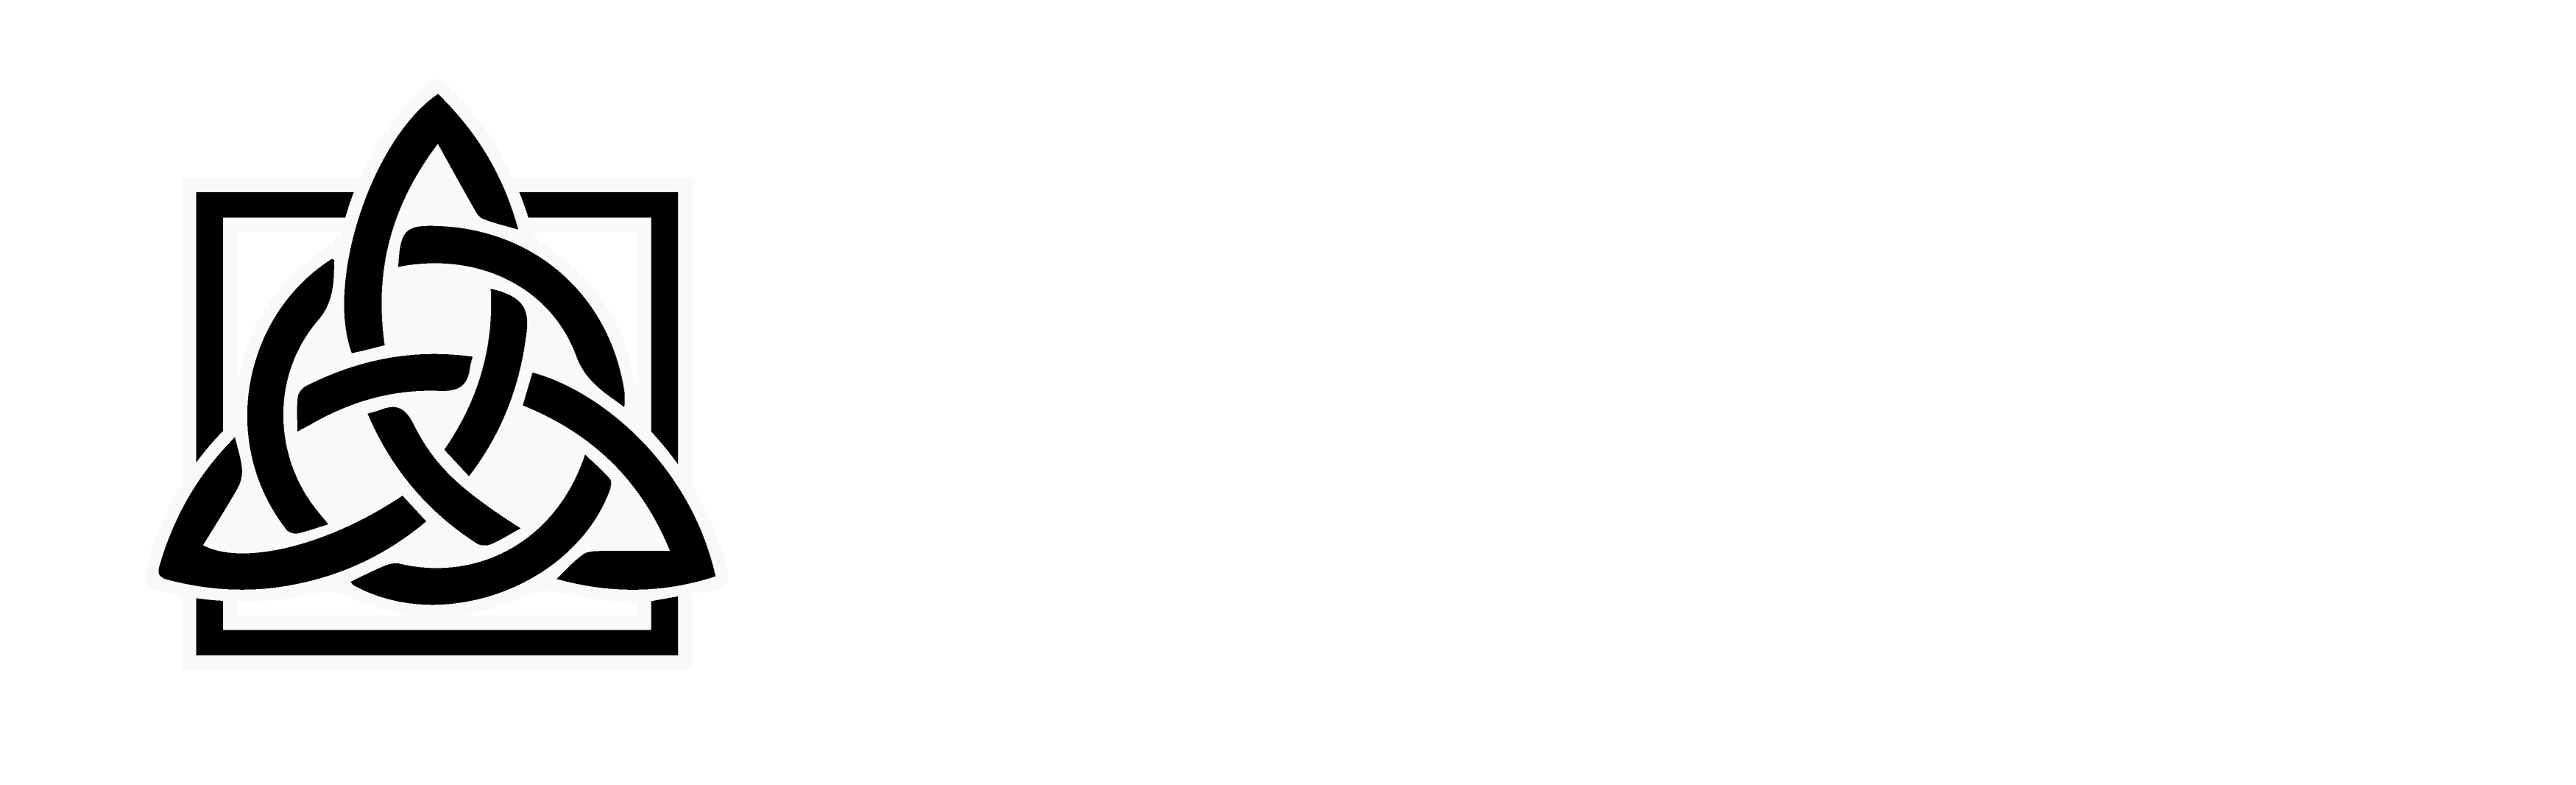 BlackInk_Final-white